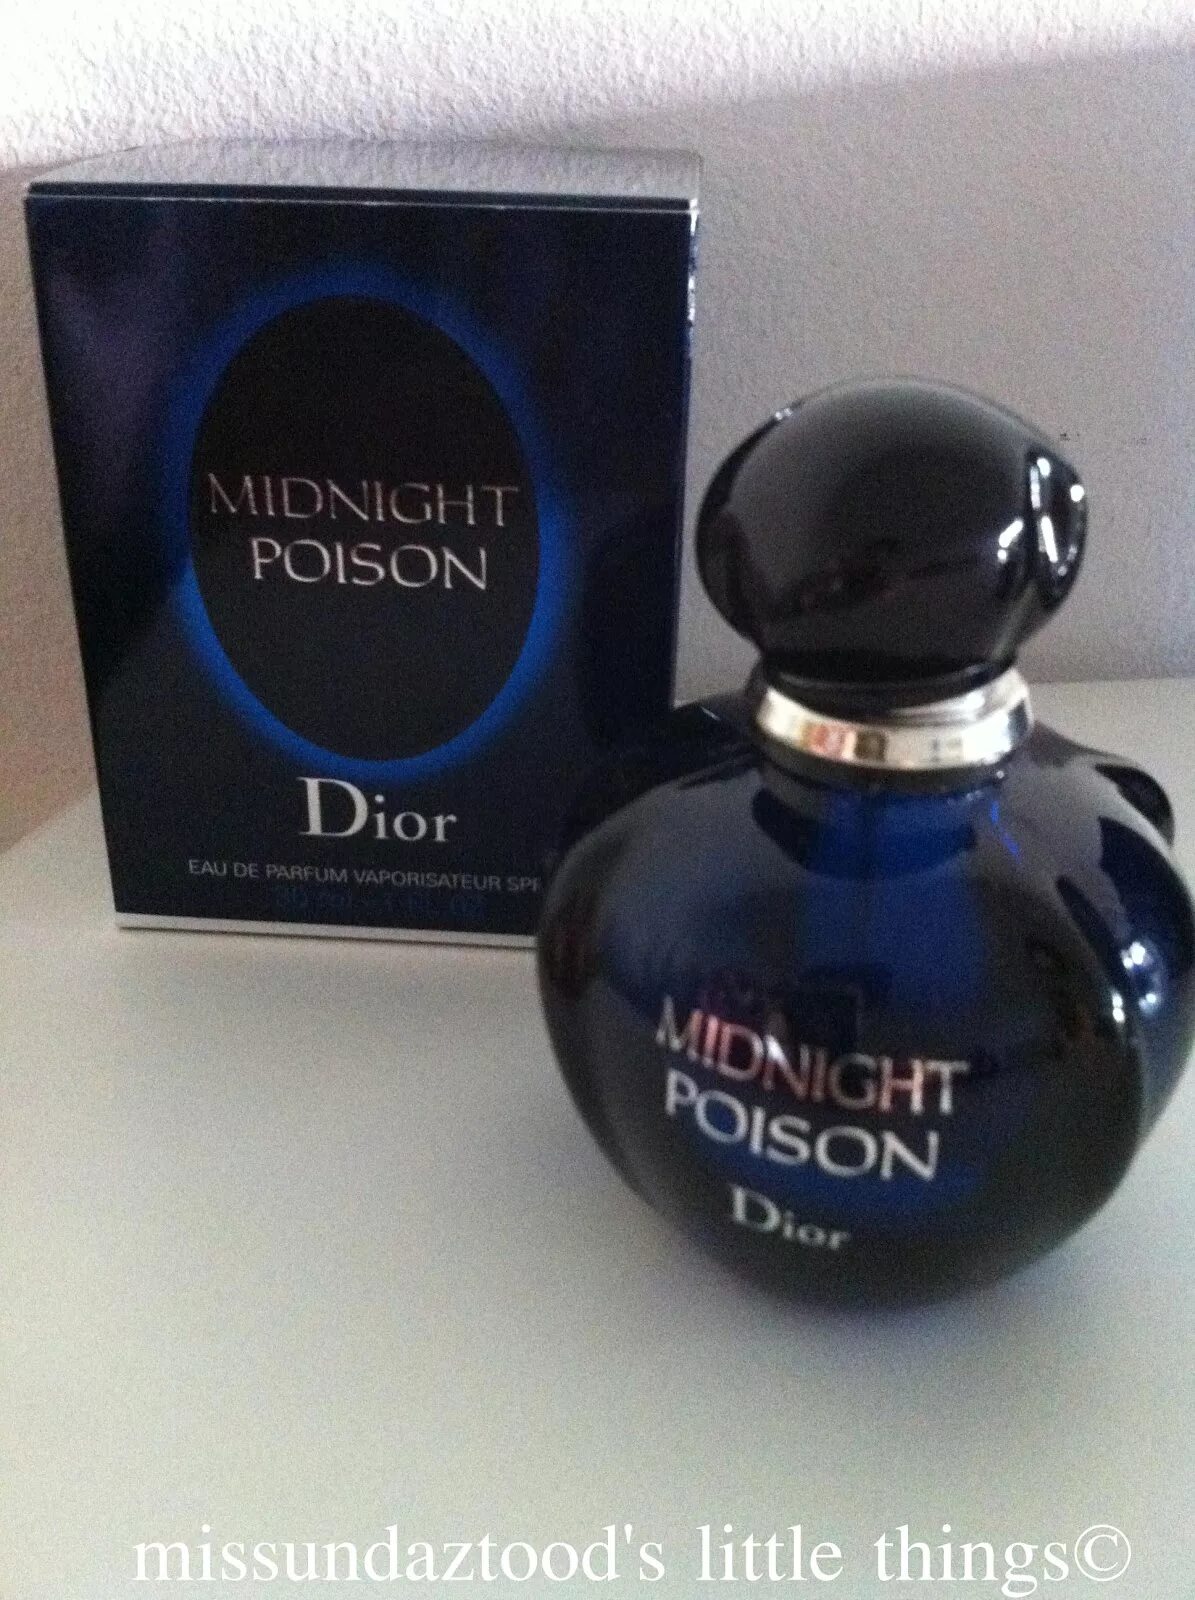 Миднайт пуазон. Духи Christian Dior Midnight Poison. Dior Midnight Poison 100мл. Миднайт пуазон Dior. Пуазон духи женские Midnight.